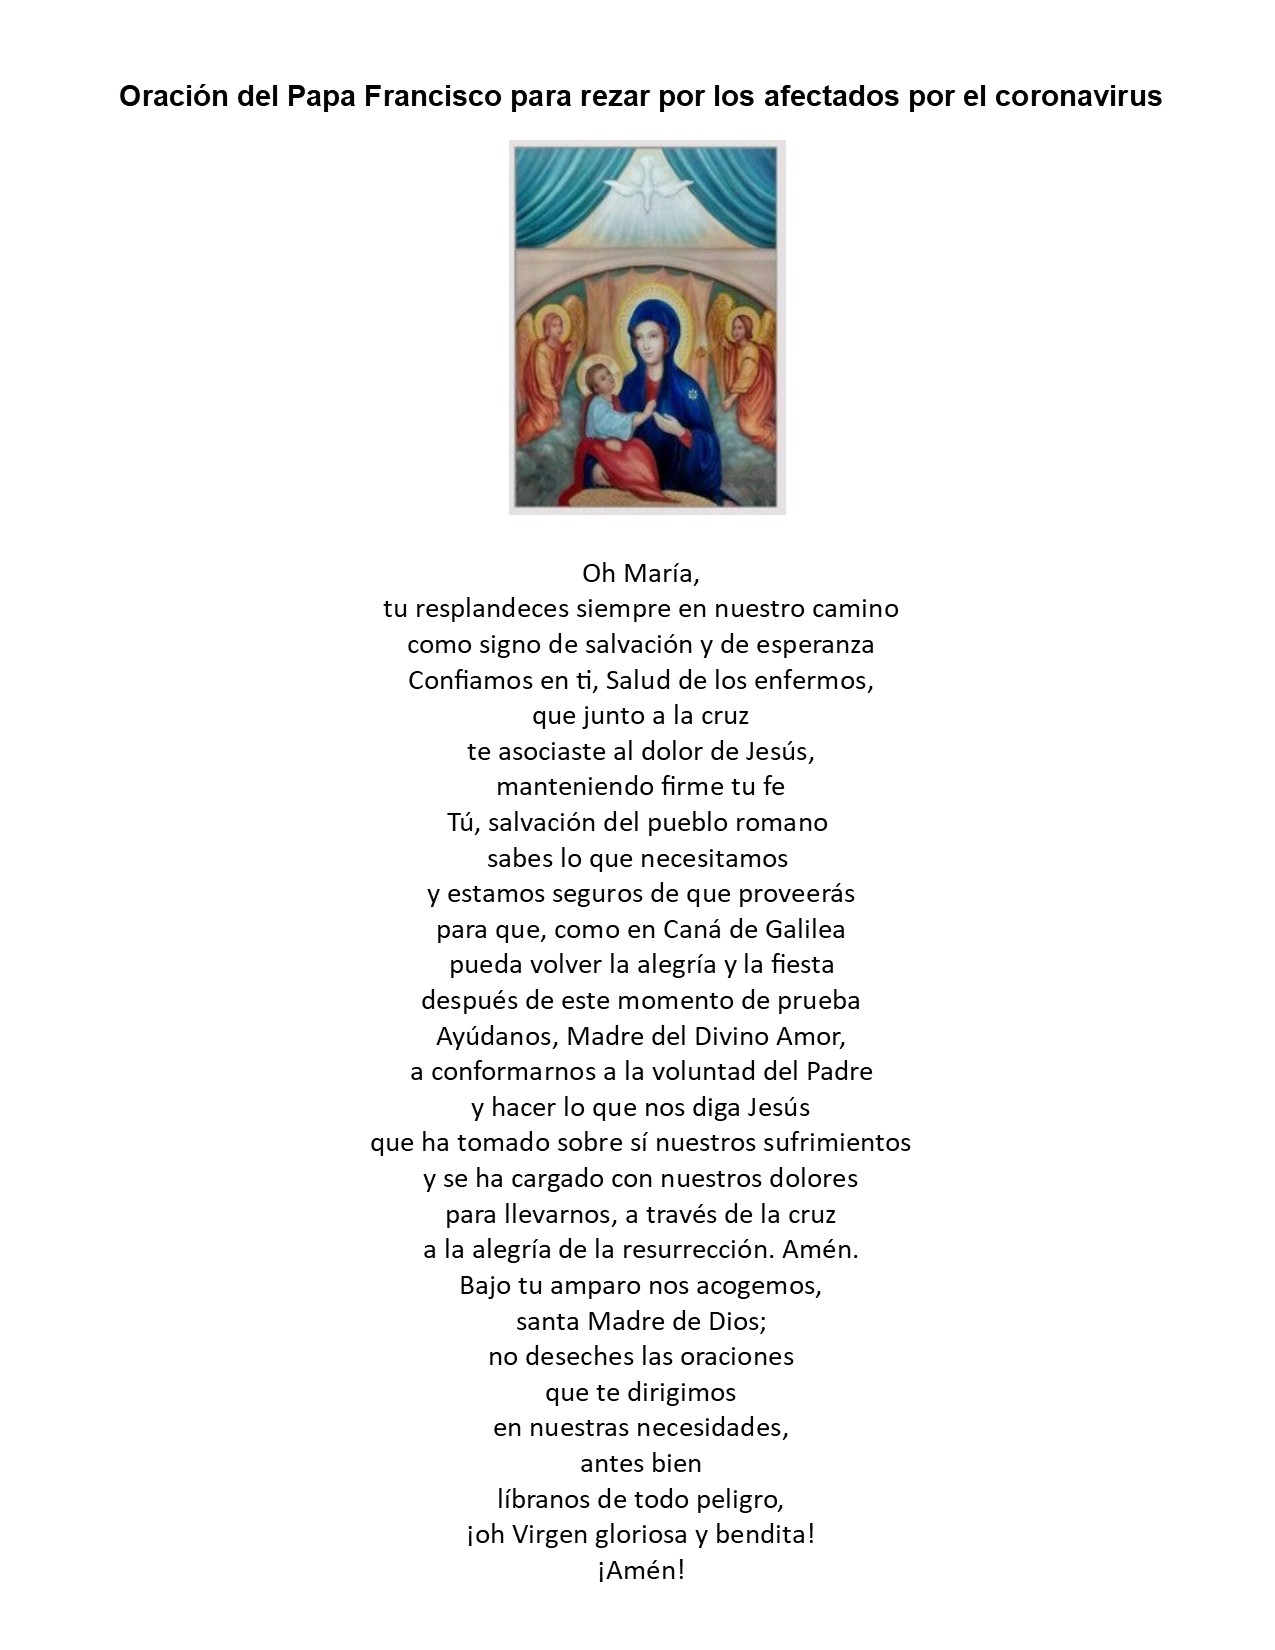 Spanish_Prayer.jpg